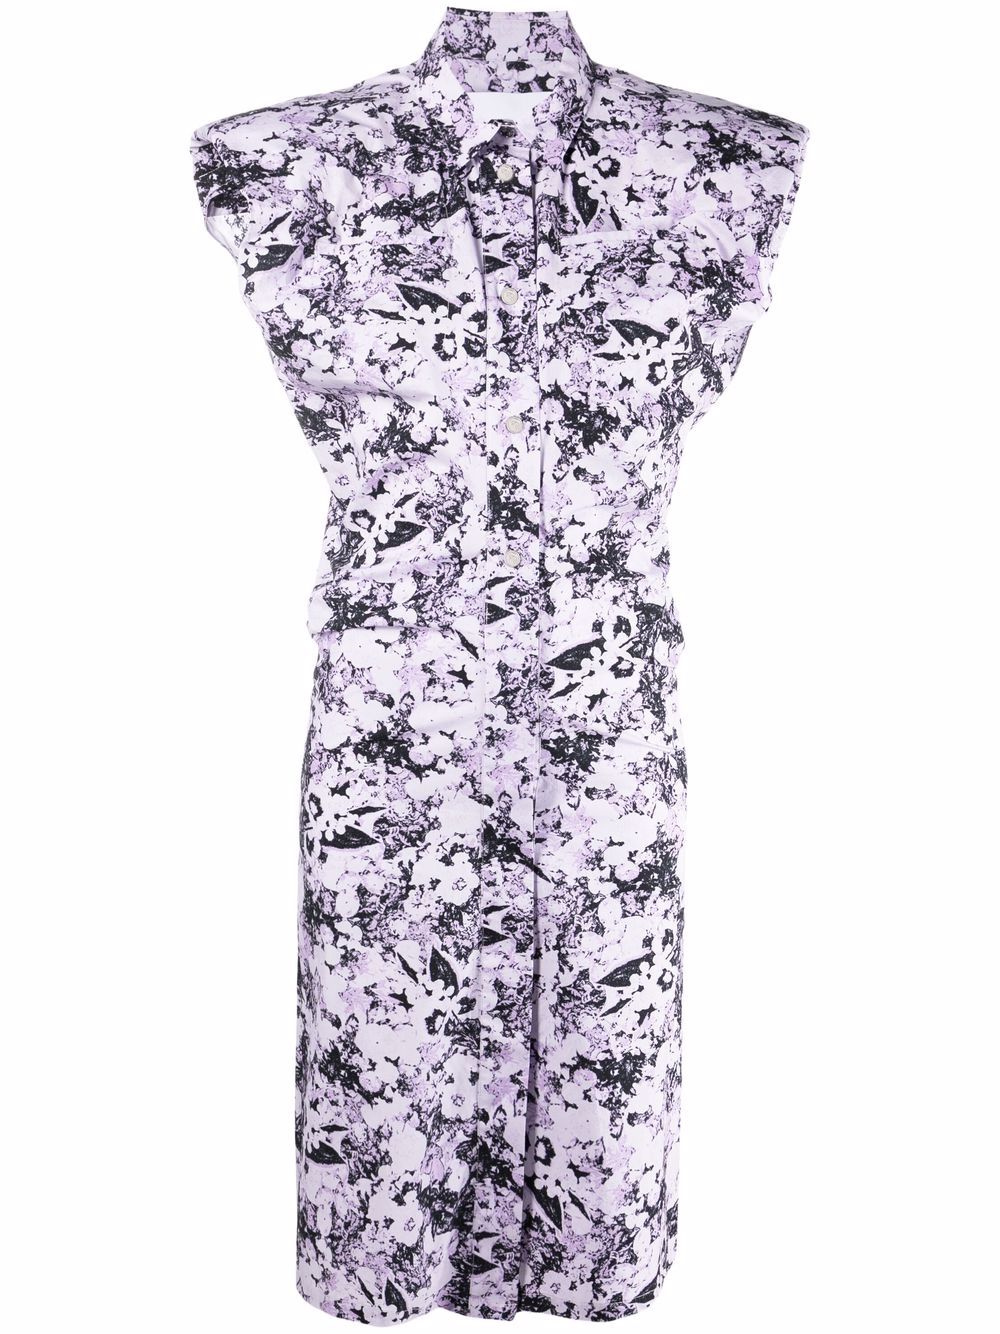 фото Remain платье-рубашка marika без рукавов с абстрактным принтом